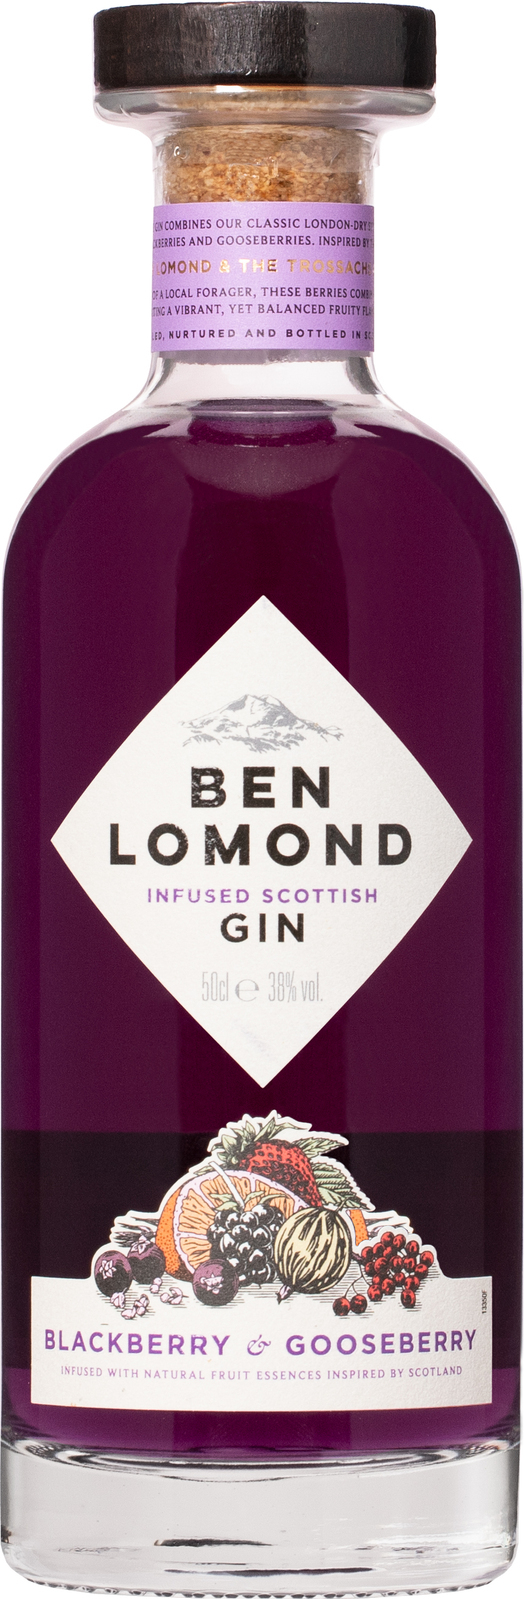 Ben Lomond Blackberry & Gooseberry Gin 38% 0,7l